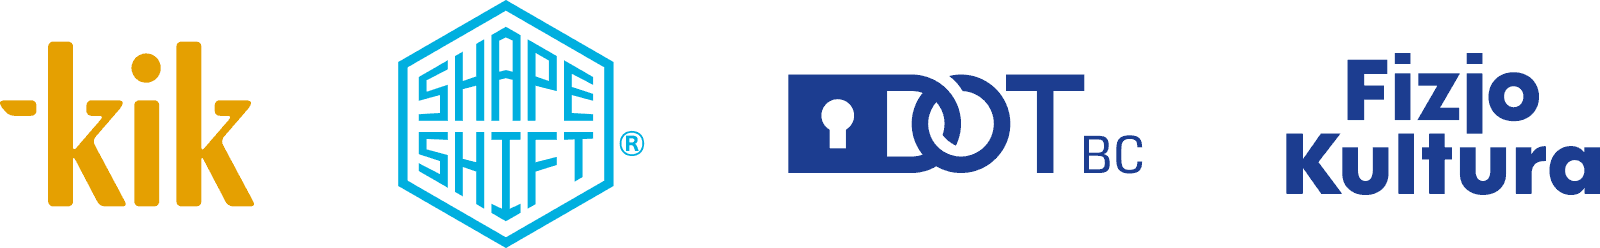 logotypy i monogramy ze zmodyfikowanym, dedykowanym, autorskim liternictwem czcionek